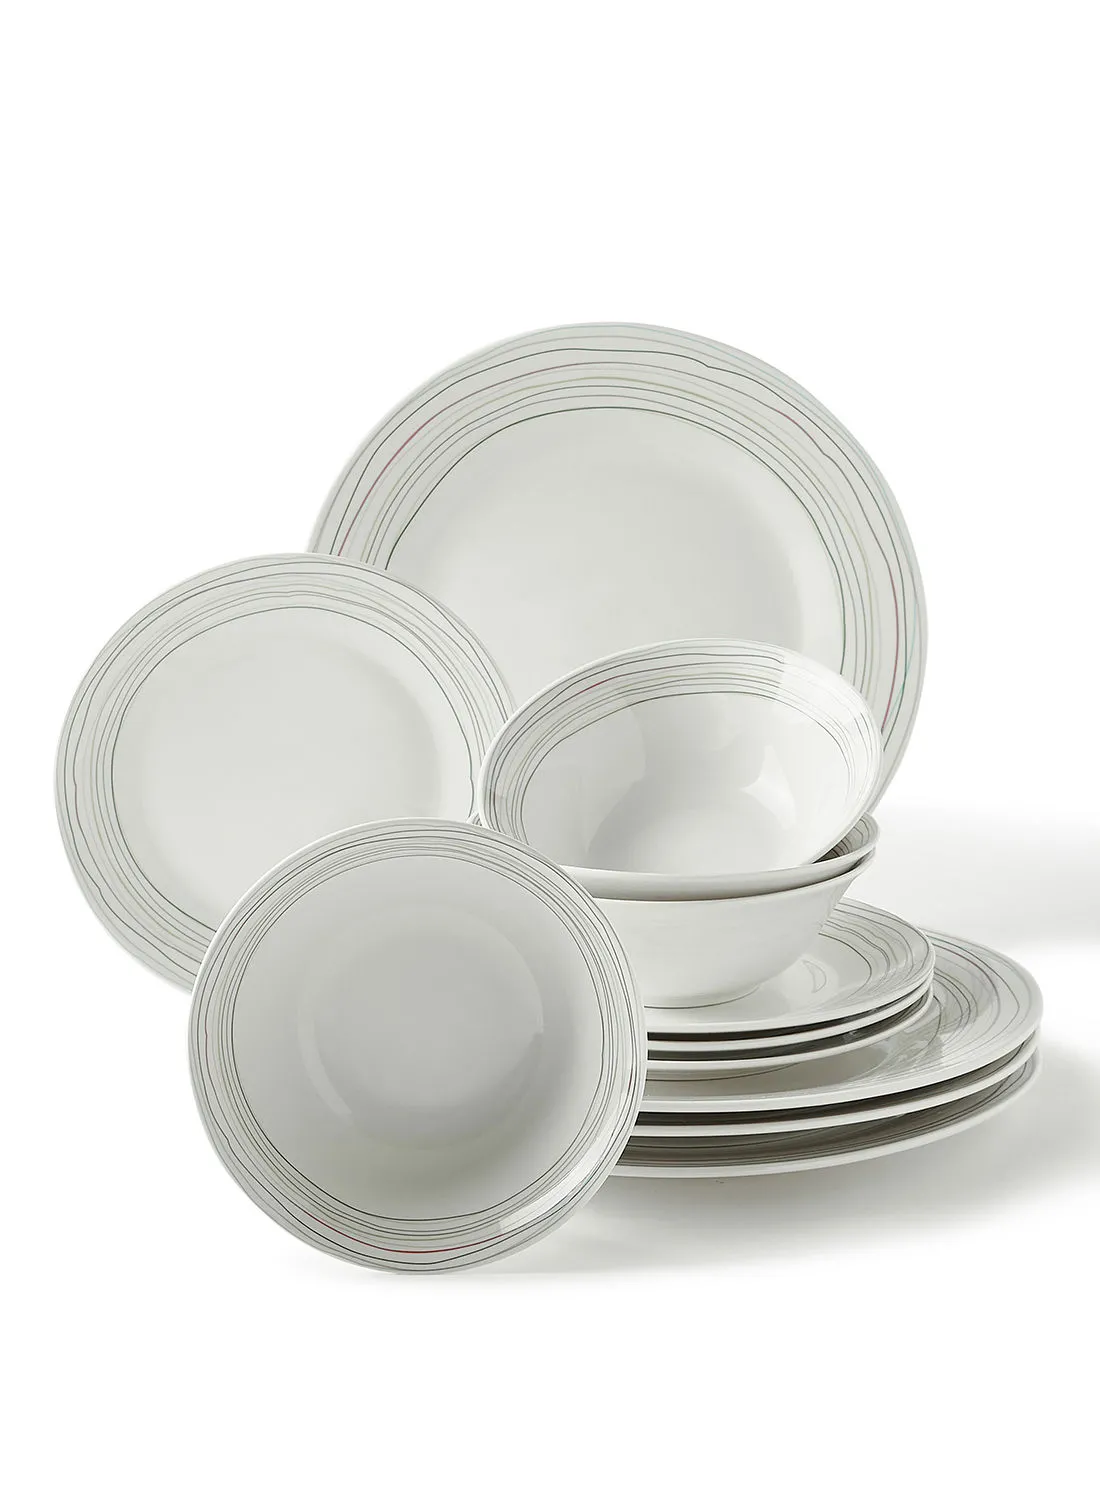 noon east 12 Piece Porcelain Dinner Set - Dishes, Plates - Dinner Plate, Side Plate, Bowl - Serves 4 - Printed Design Scribbles